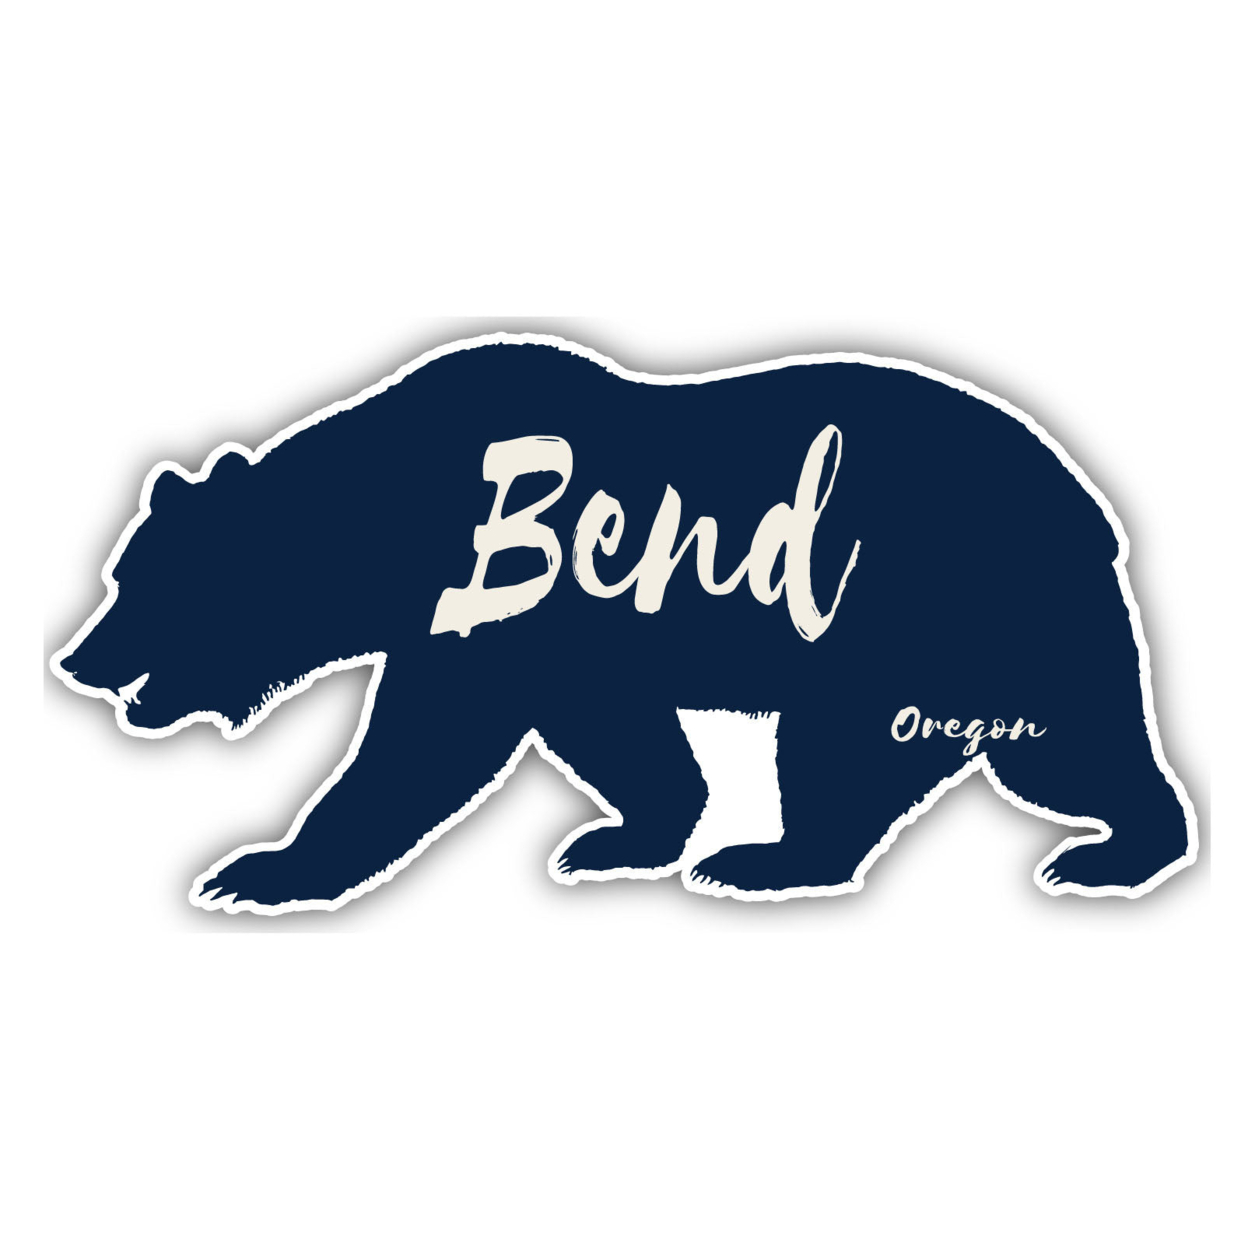 Bend Oregon Souvenir Decorative Stickers (Choose Theme And Size) - Single Unit, 4-Inch, Tent